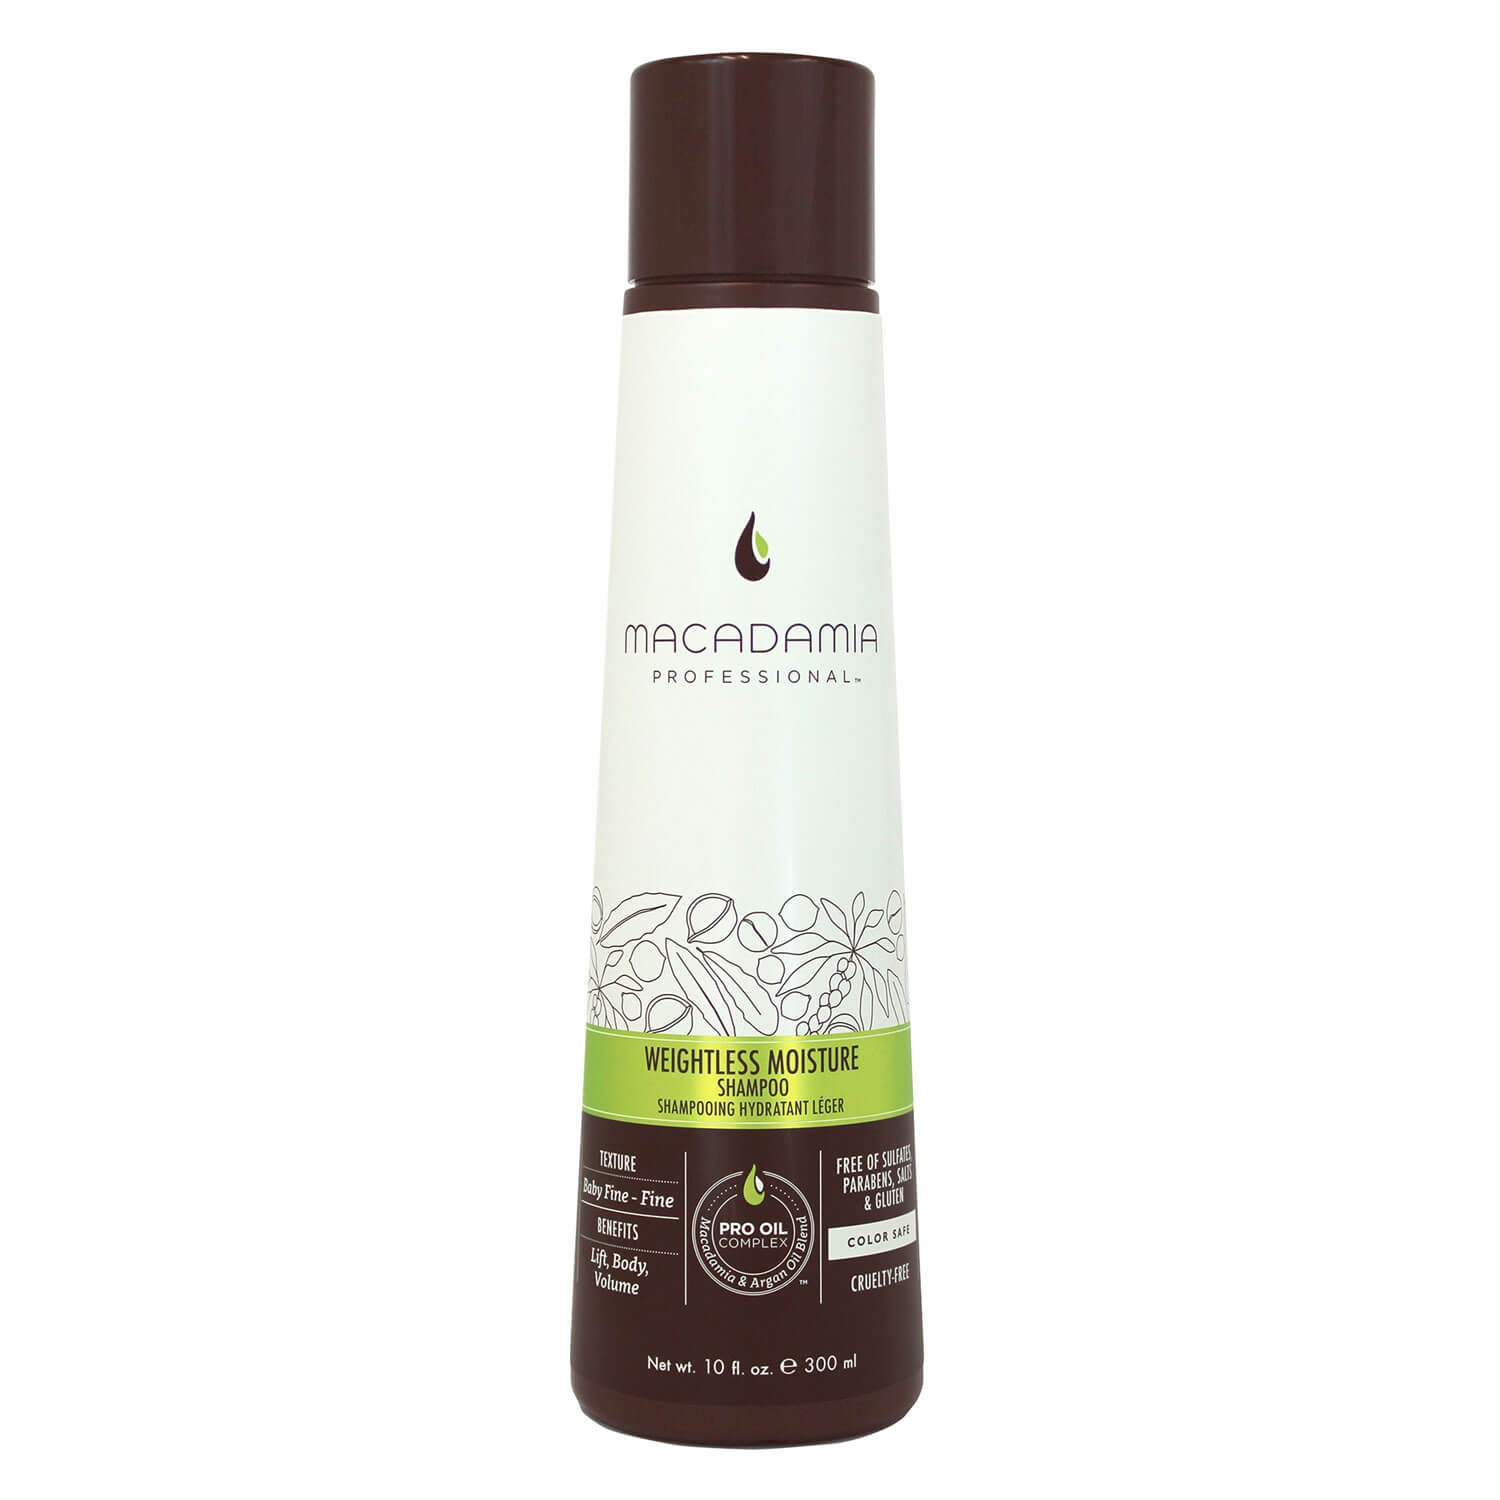 Produktbild von Macadamia - Weightless Moisture Shampoo